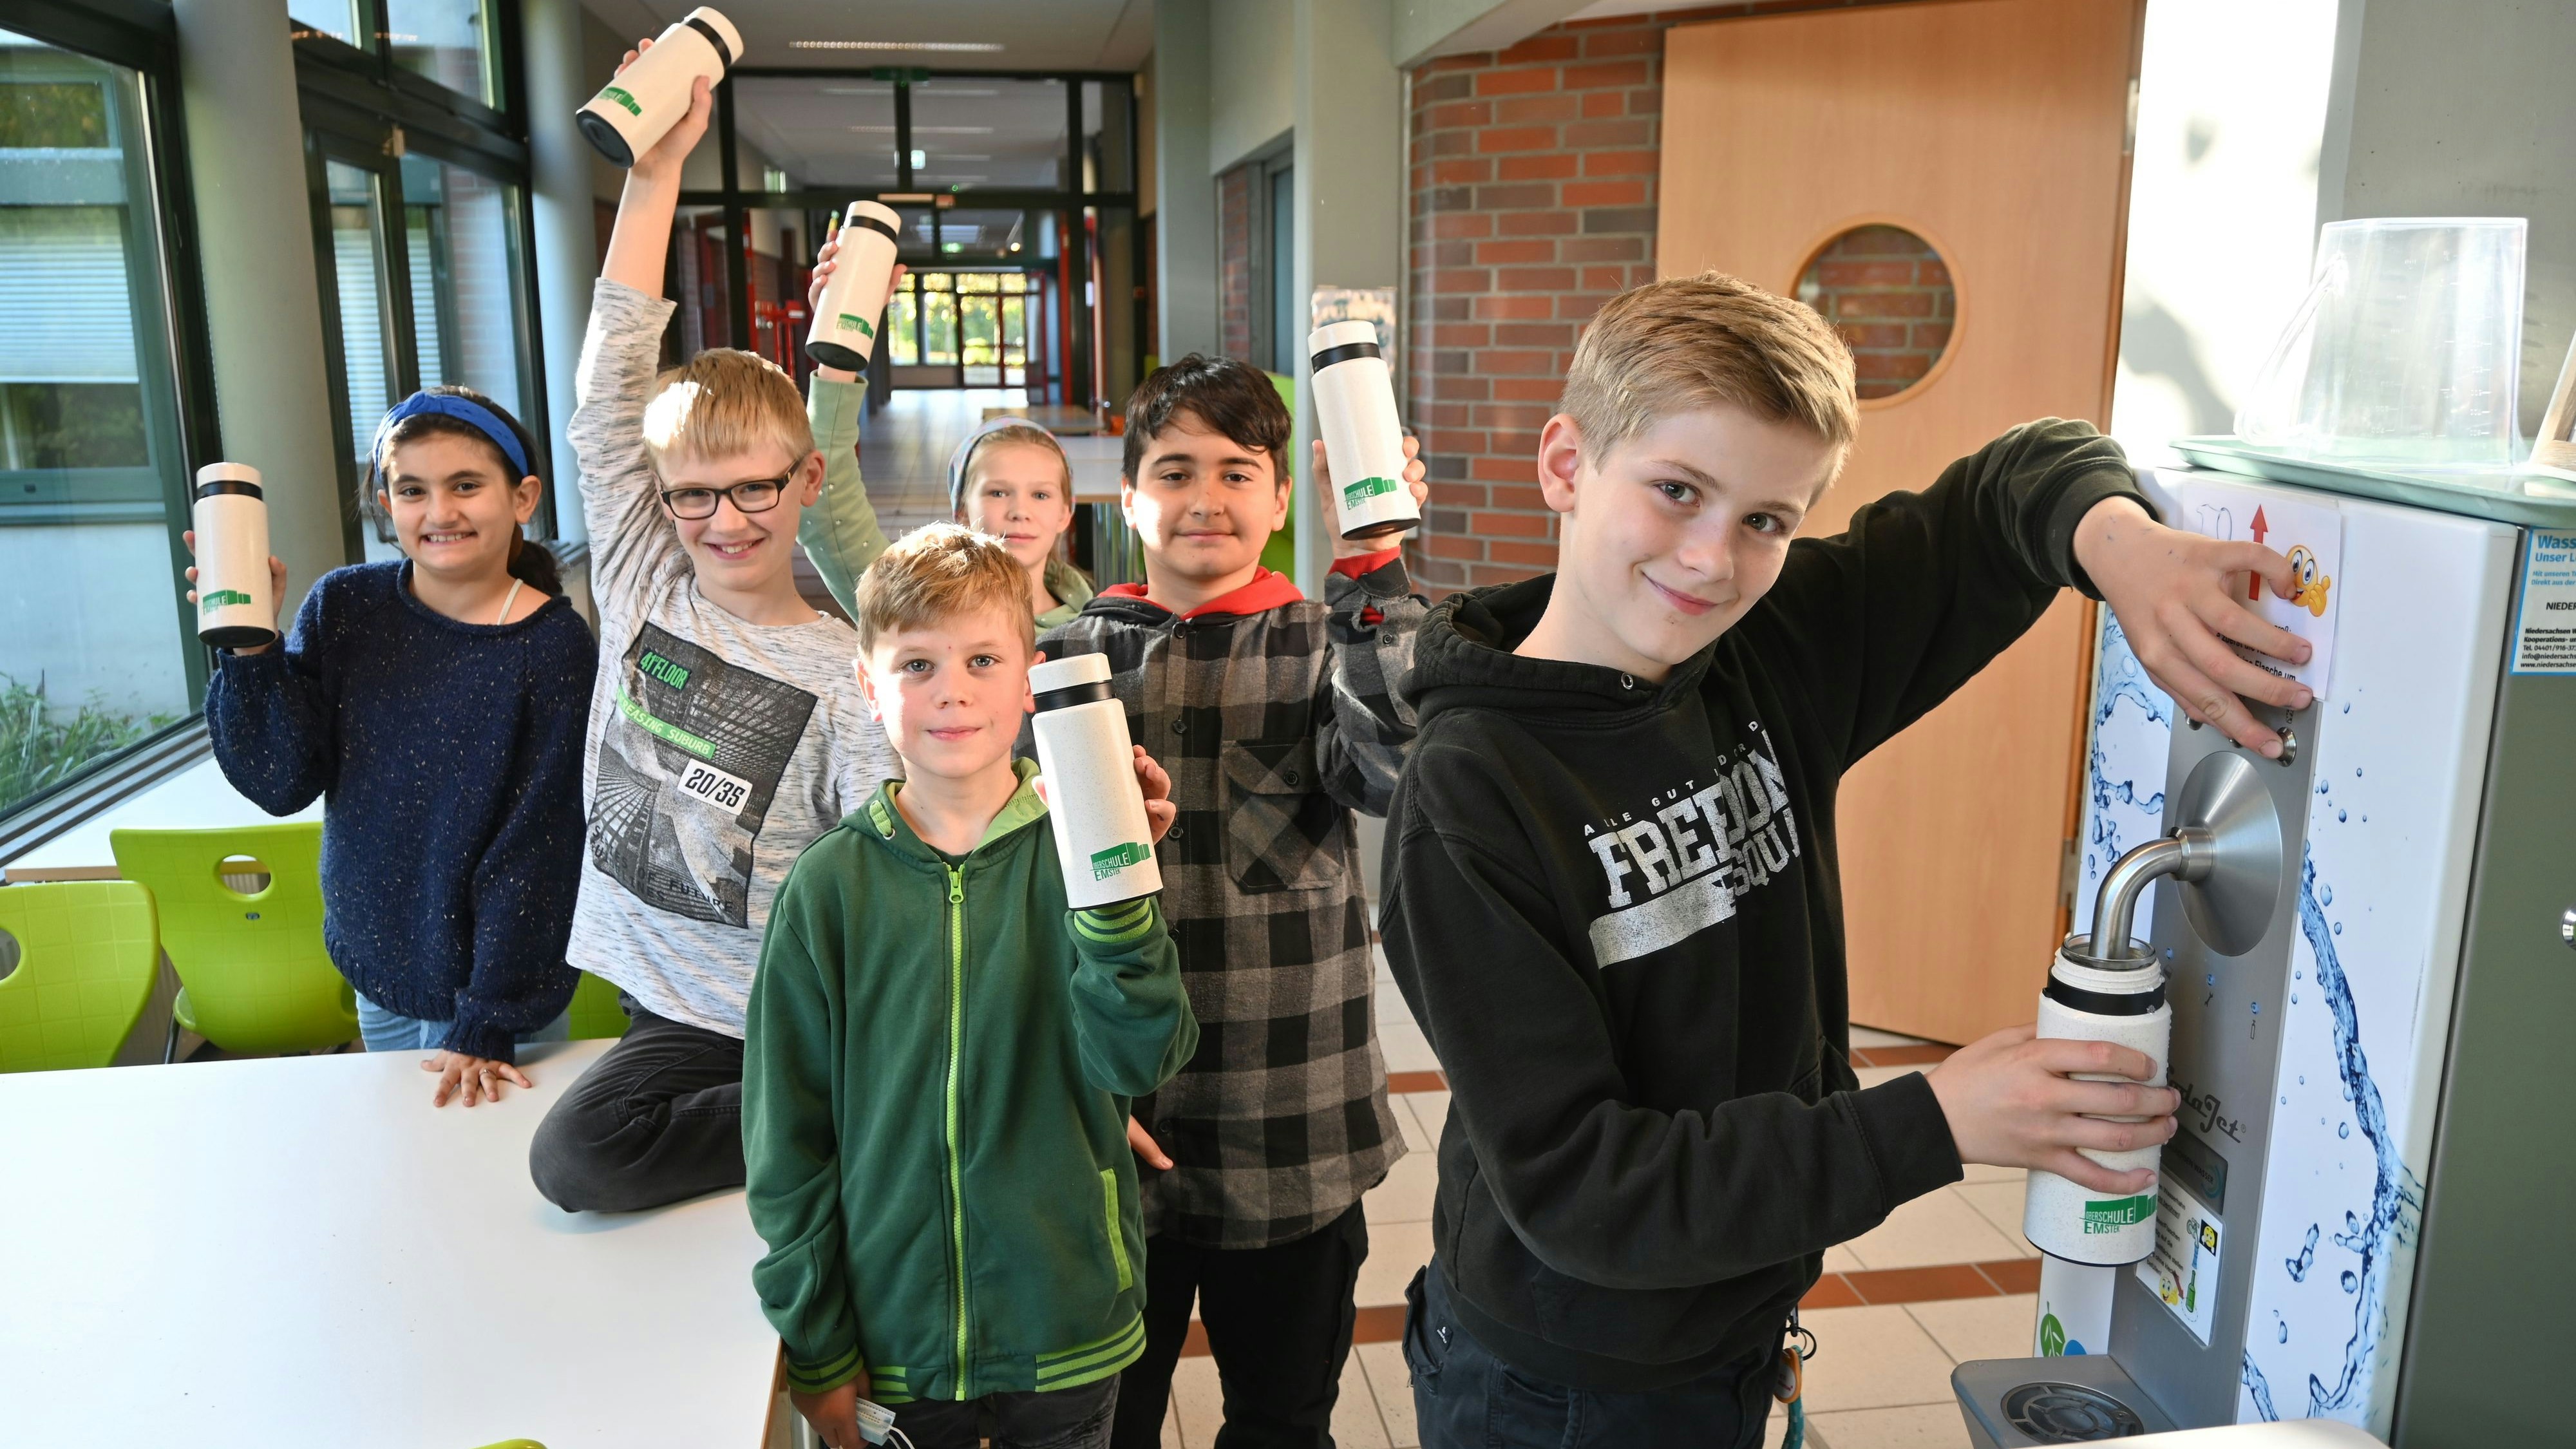 Frisch gezapft: Die ersten Schüler haben ihre neuen Trinkflaschen gleich ausprobiert. Foto: Thomas Vorwerk